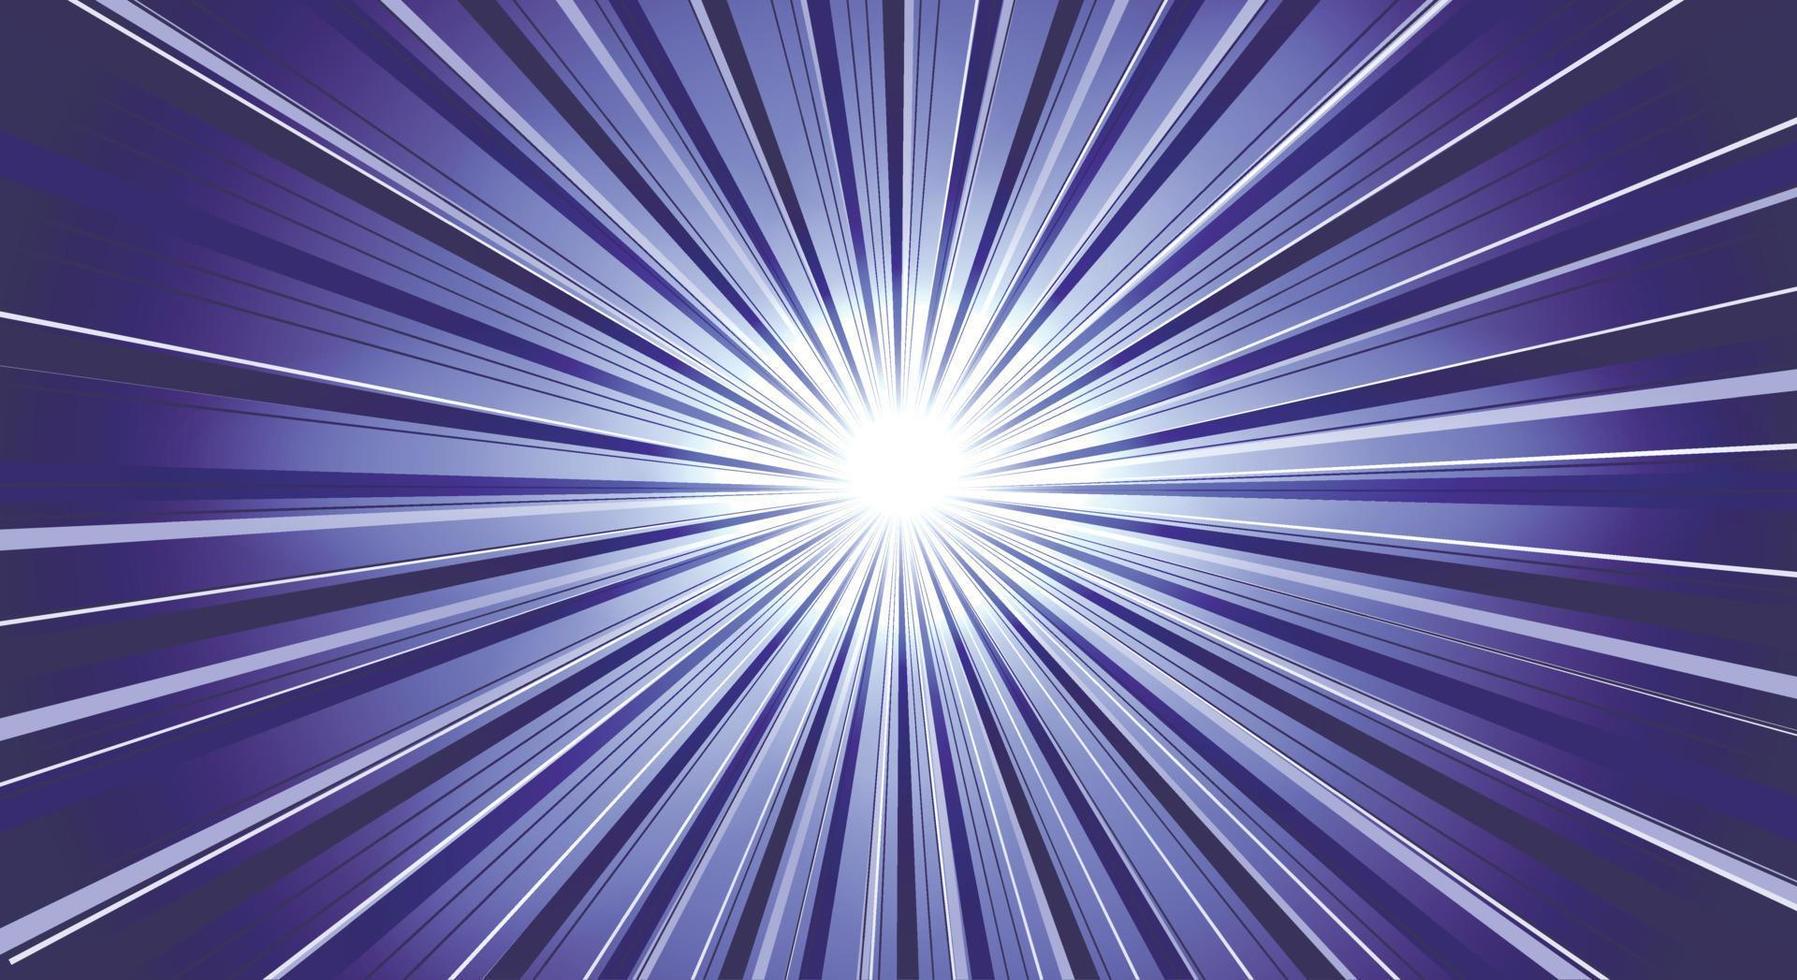 een magische ultraviolette felle zon of een schitterende ster met veel parallelle stralen in trendy zeer peri. lichteffect. ruimte kopiëren. vector illustratie